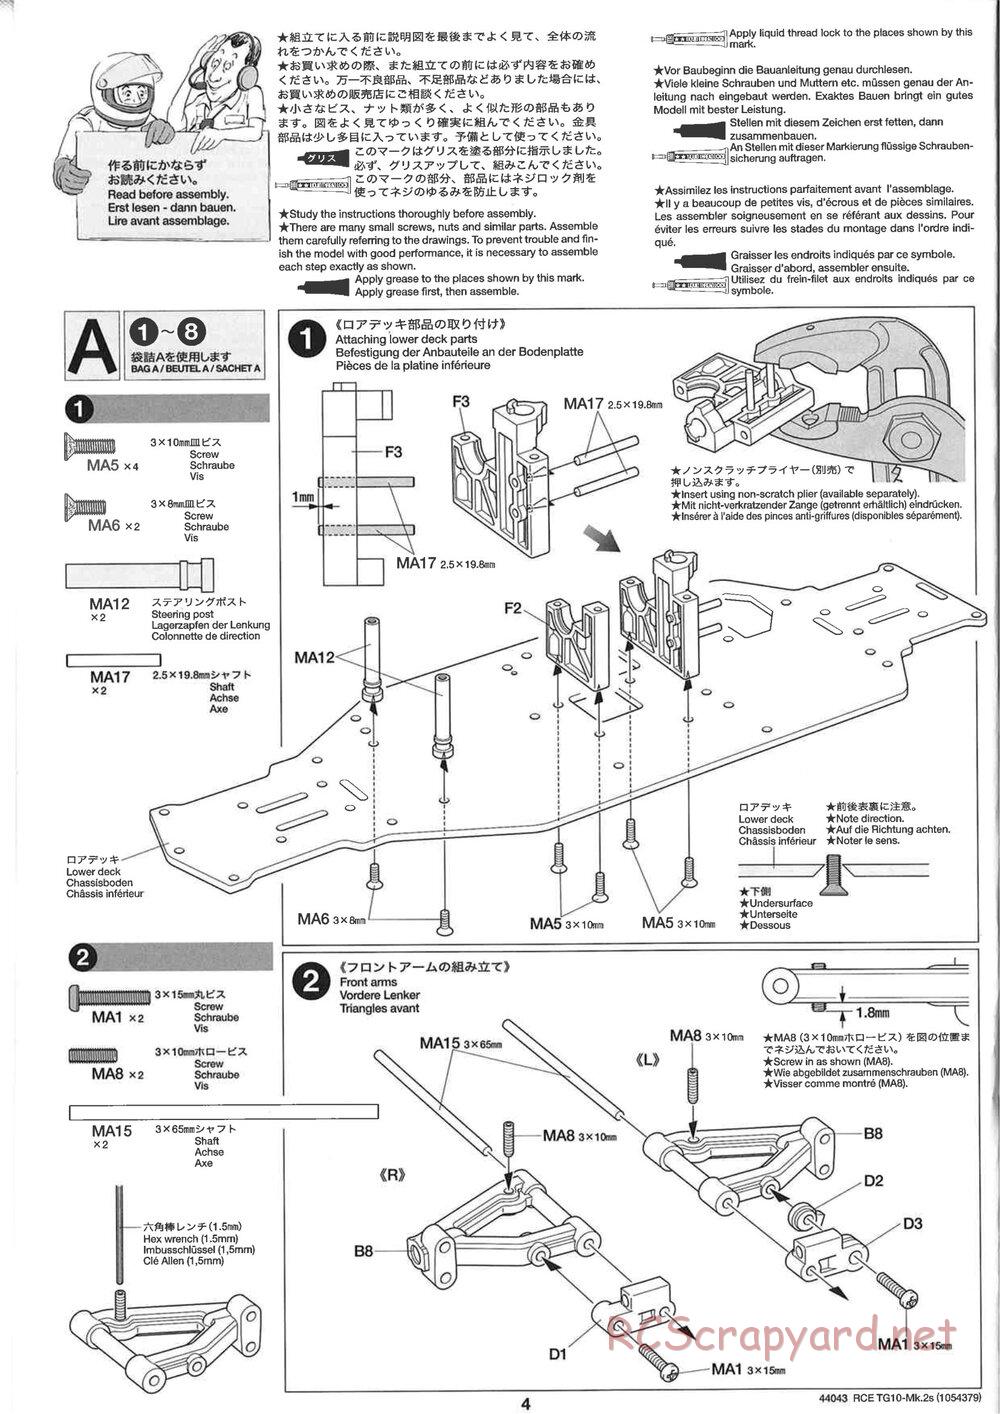 Tamiya - TG10 Mk.2s Chassis - Manual - Page 5